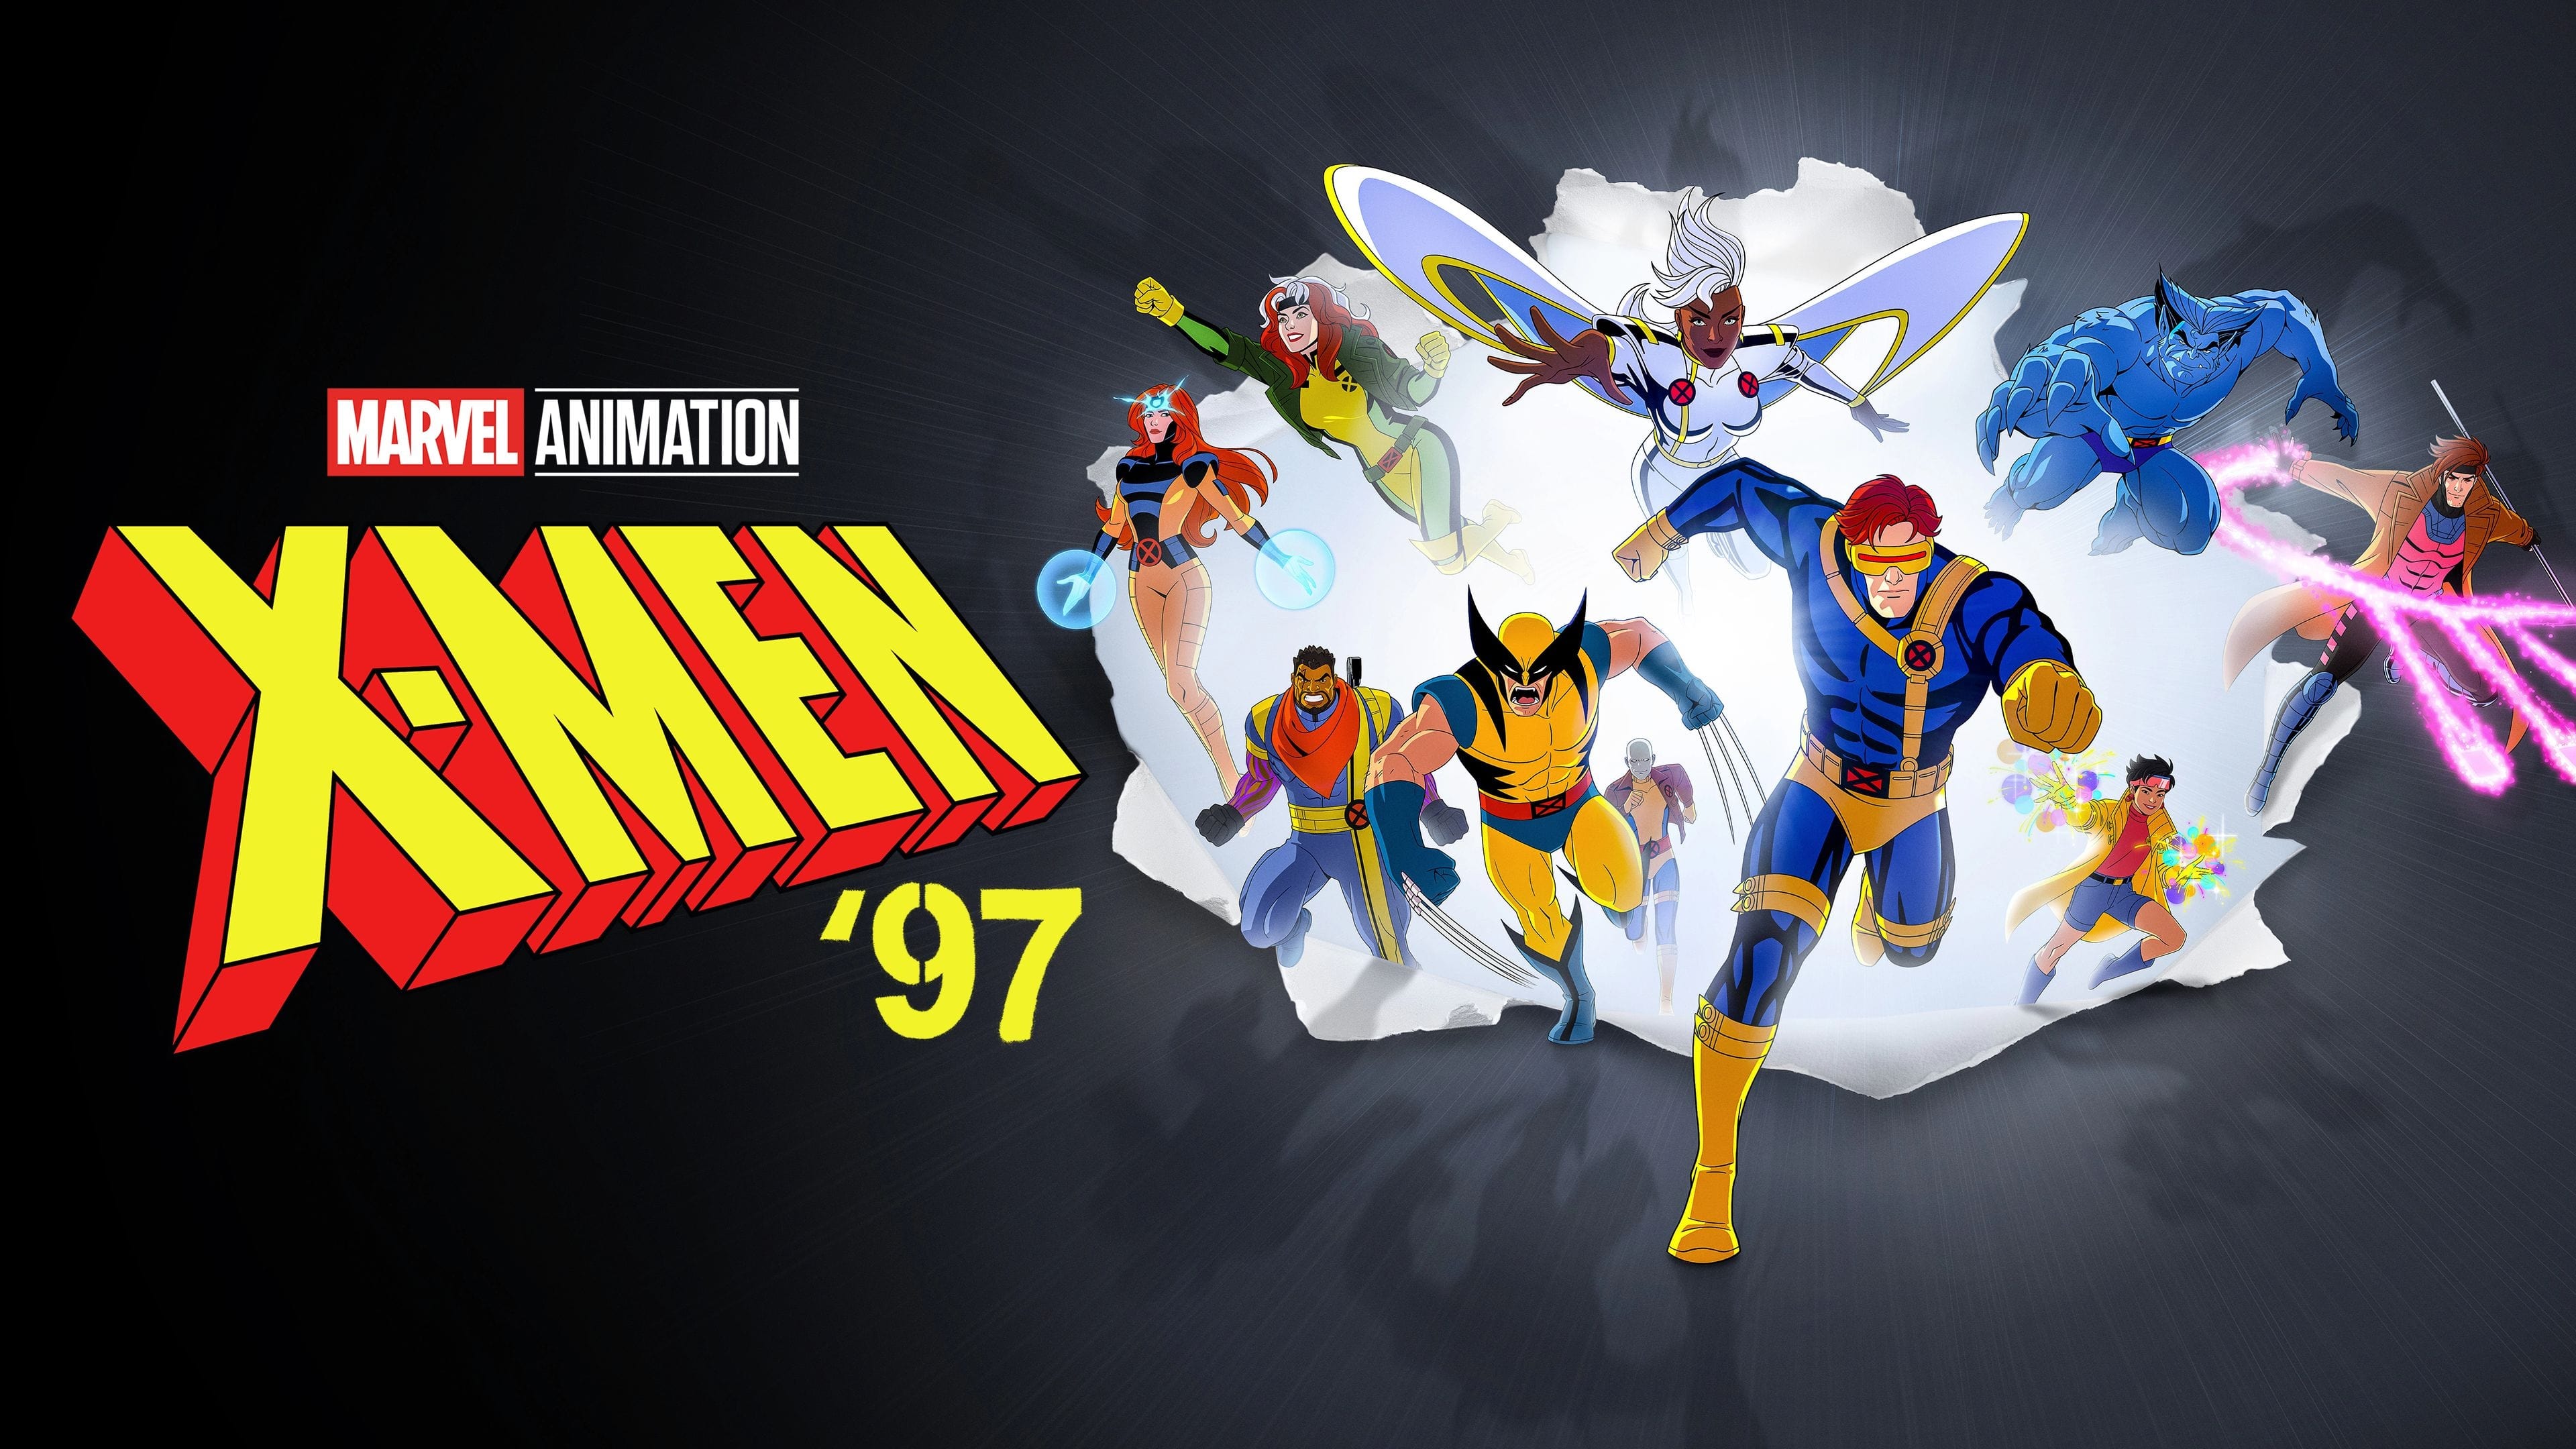 X-Men '97 - Season 1 Episode 6